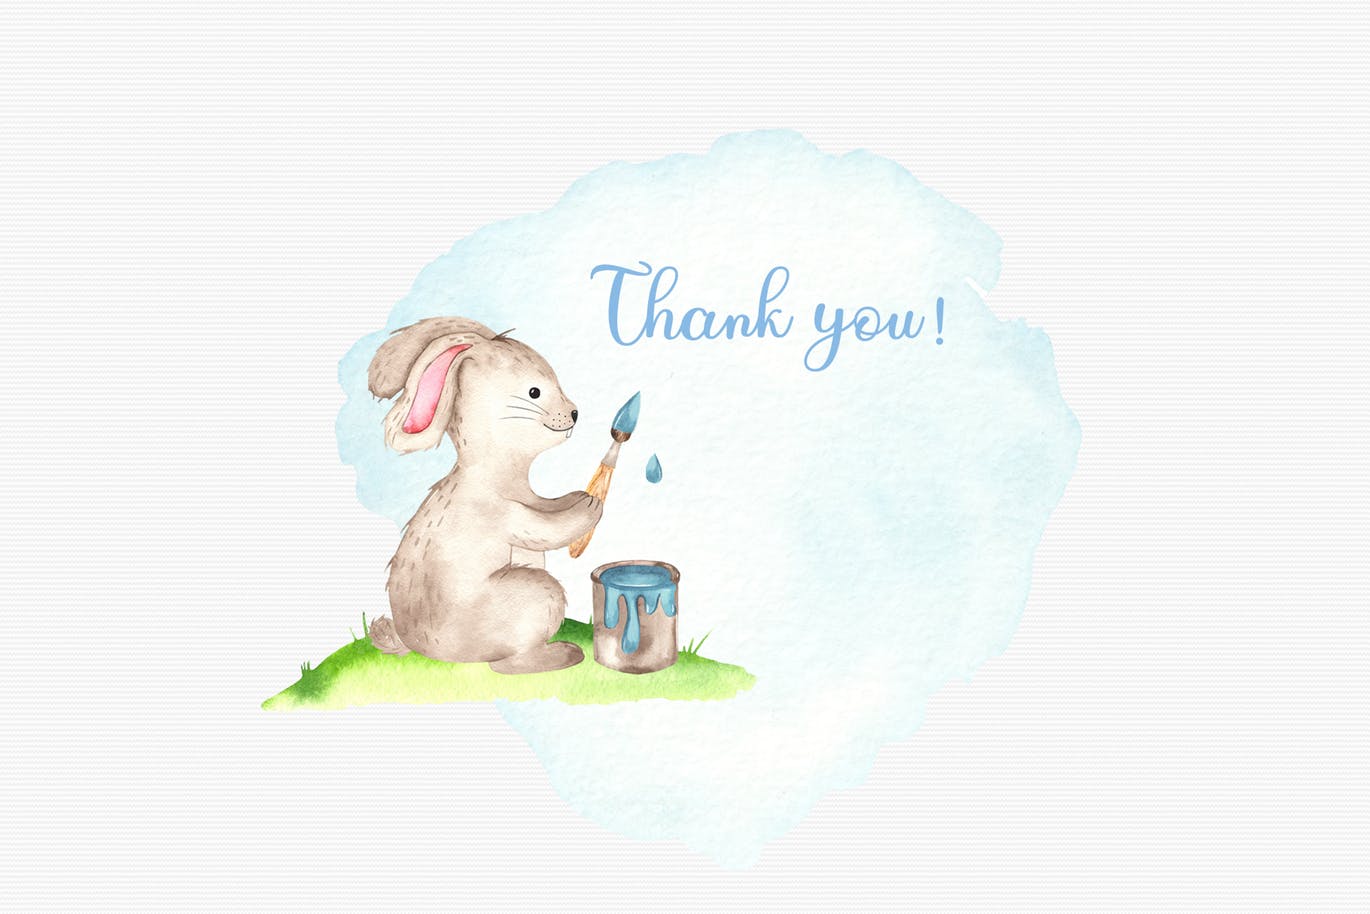 复活节兔子水彩手绘素材套装 Watercolor Easter Bunny collection插图9